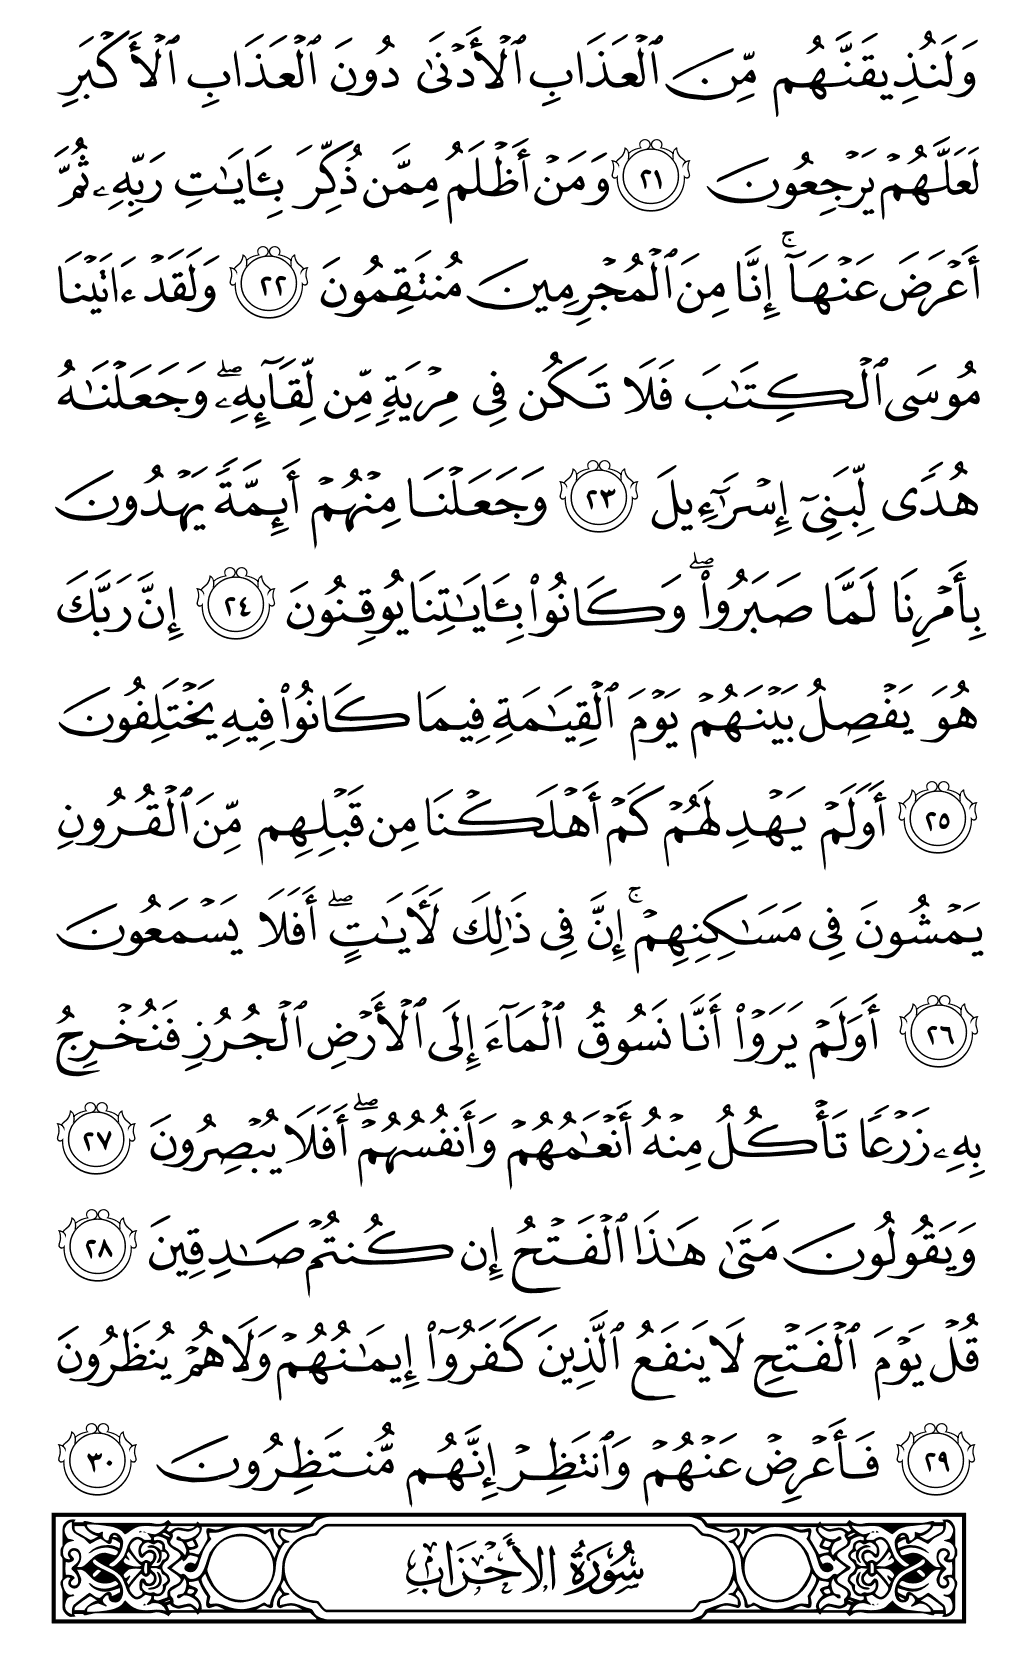 الصفحة رقم 417 من القرآن الكريم